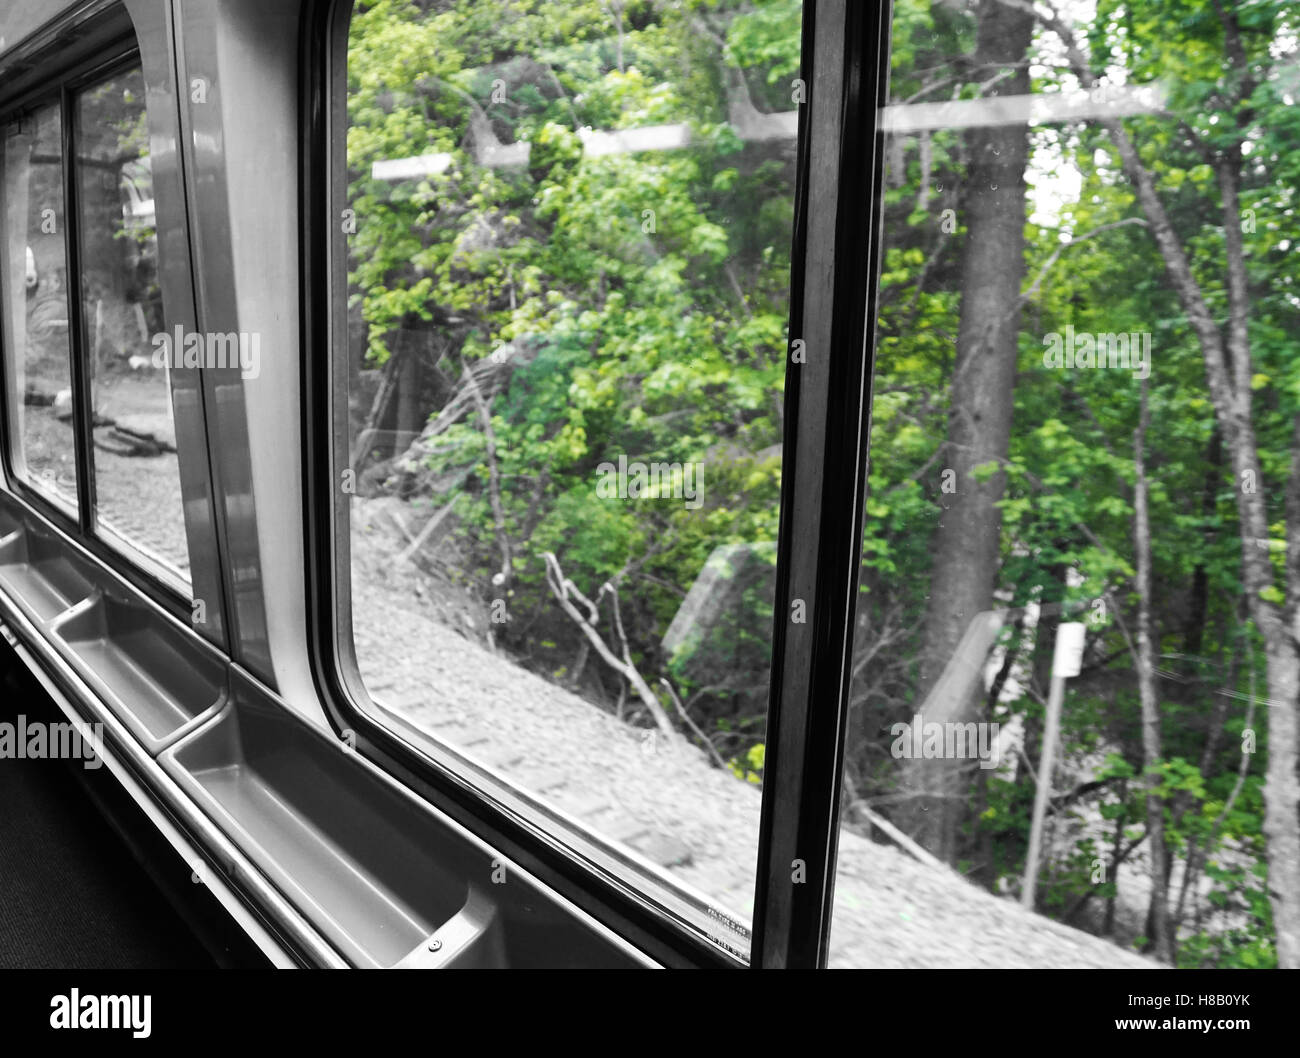 Verdi alberi vista dalla finestra del treno con il contrasto del bianco e nero Foto Stock